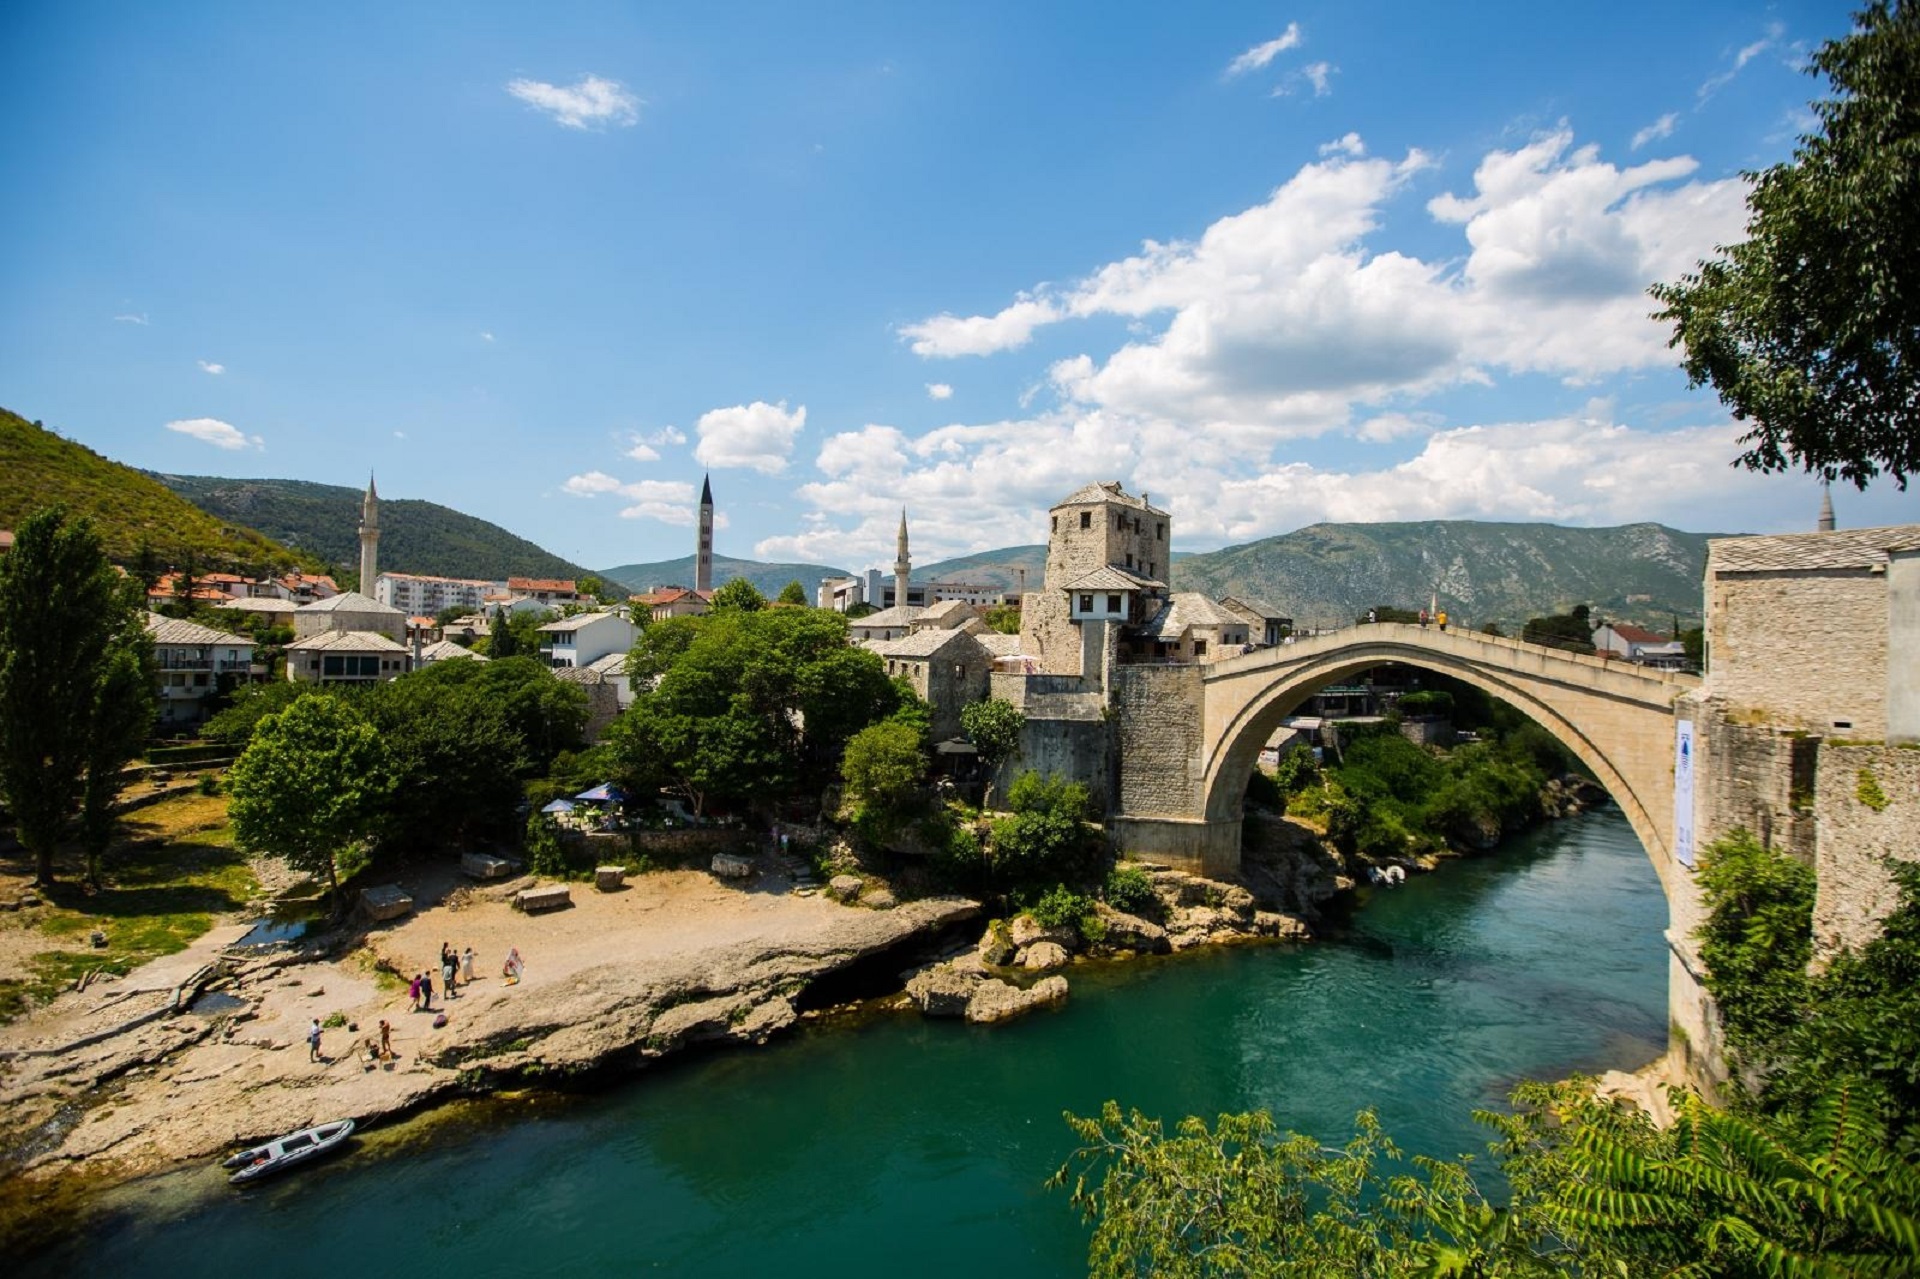 16.07.2020., Mostar, Bosna i Hercegovina - Prigodnim programom obiljezeno je petnaest godina od prijema stare gradske jezgre i simbola grada, Starog mosta, na prestiznu UNESCO-vu listu zasticene svjetske bastine. Photo: Denis Kapetanovic/PIXSELL